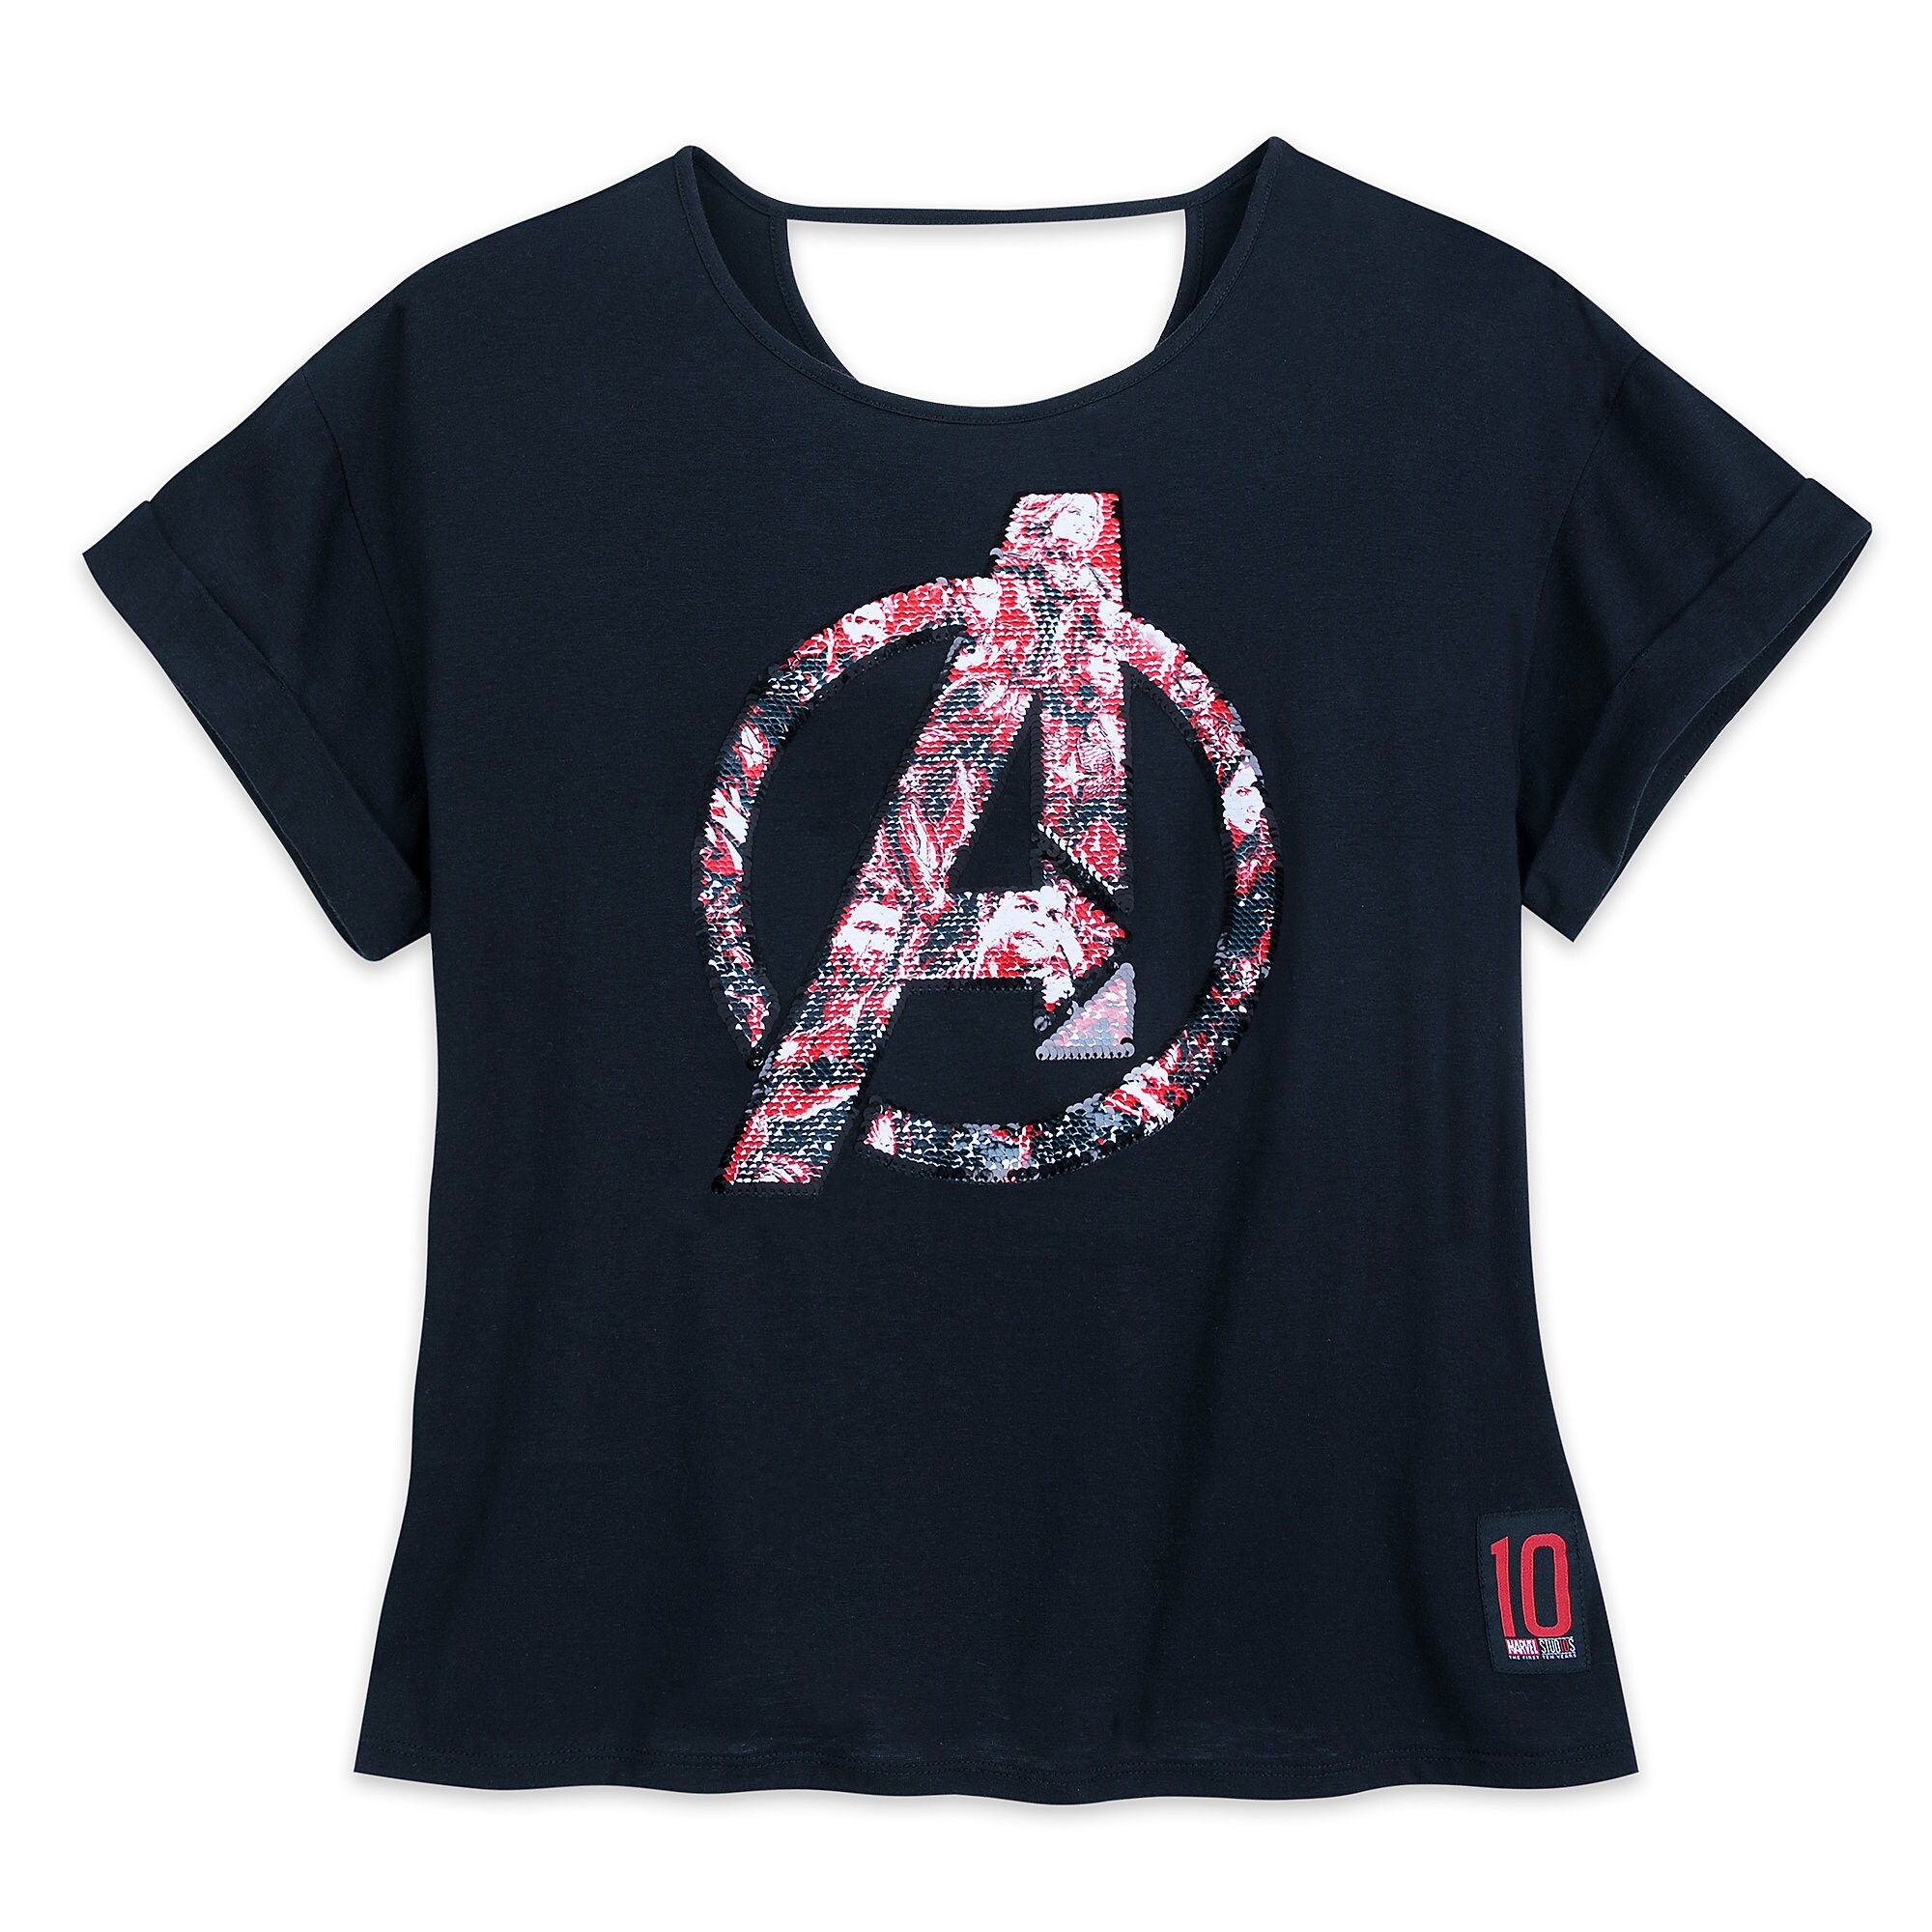 Marvel's Avengers: Endgame Reversible Sequin T-Shirt for Women is now ...